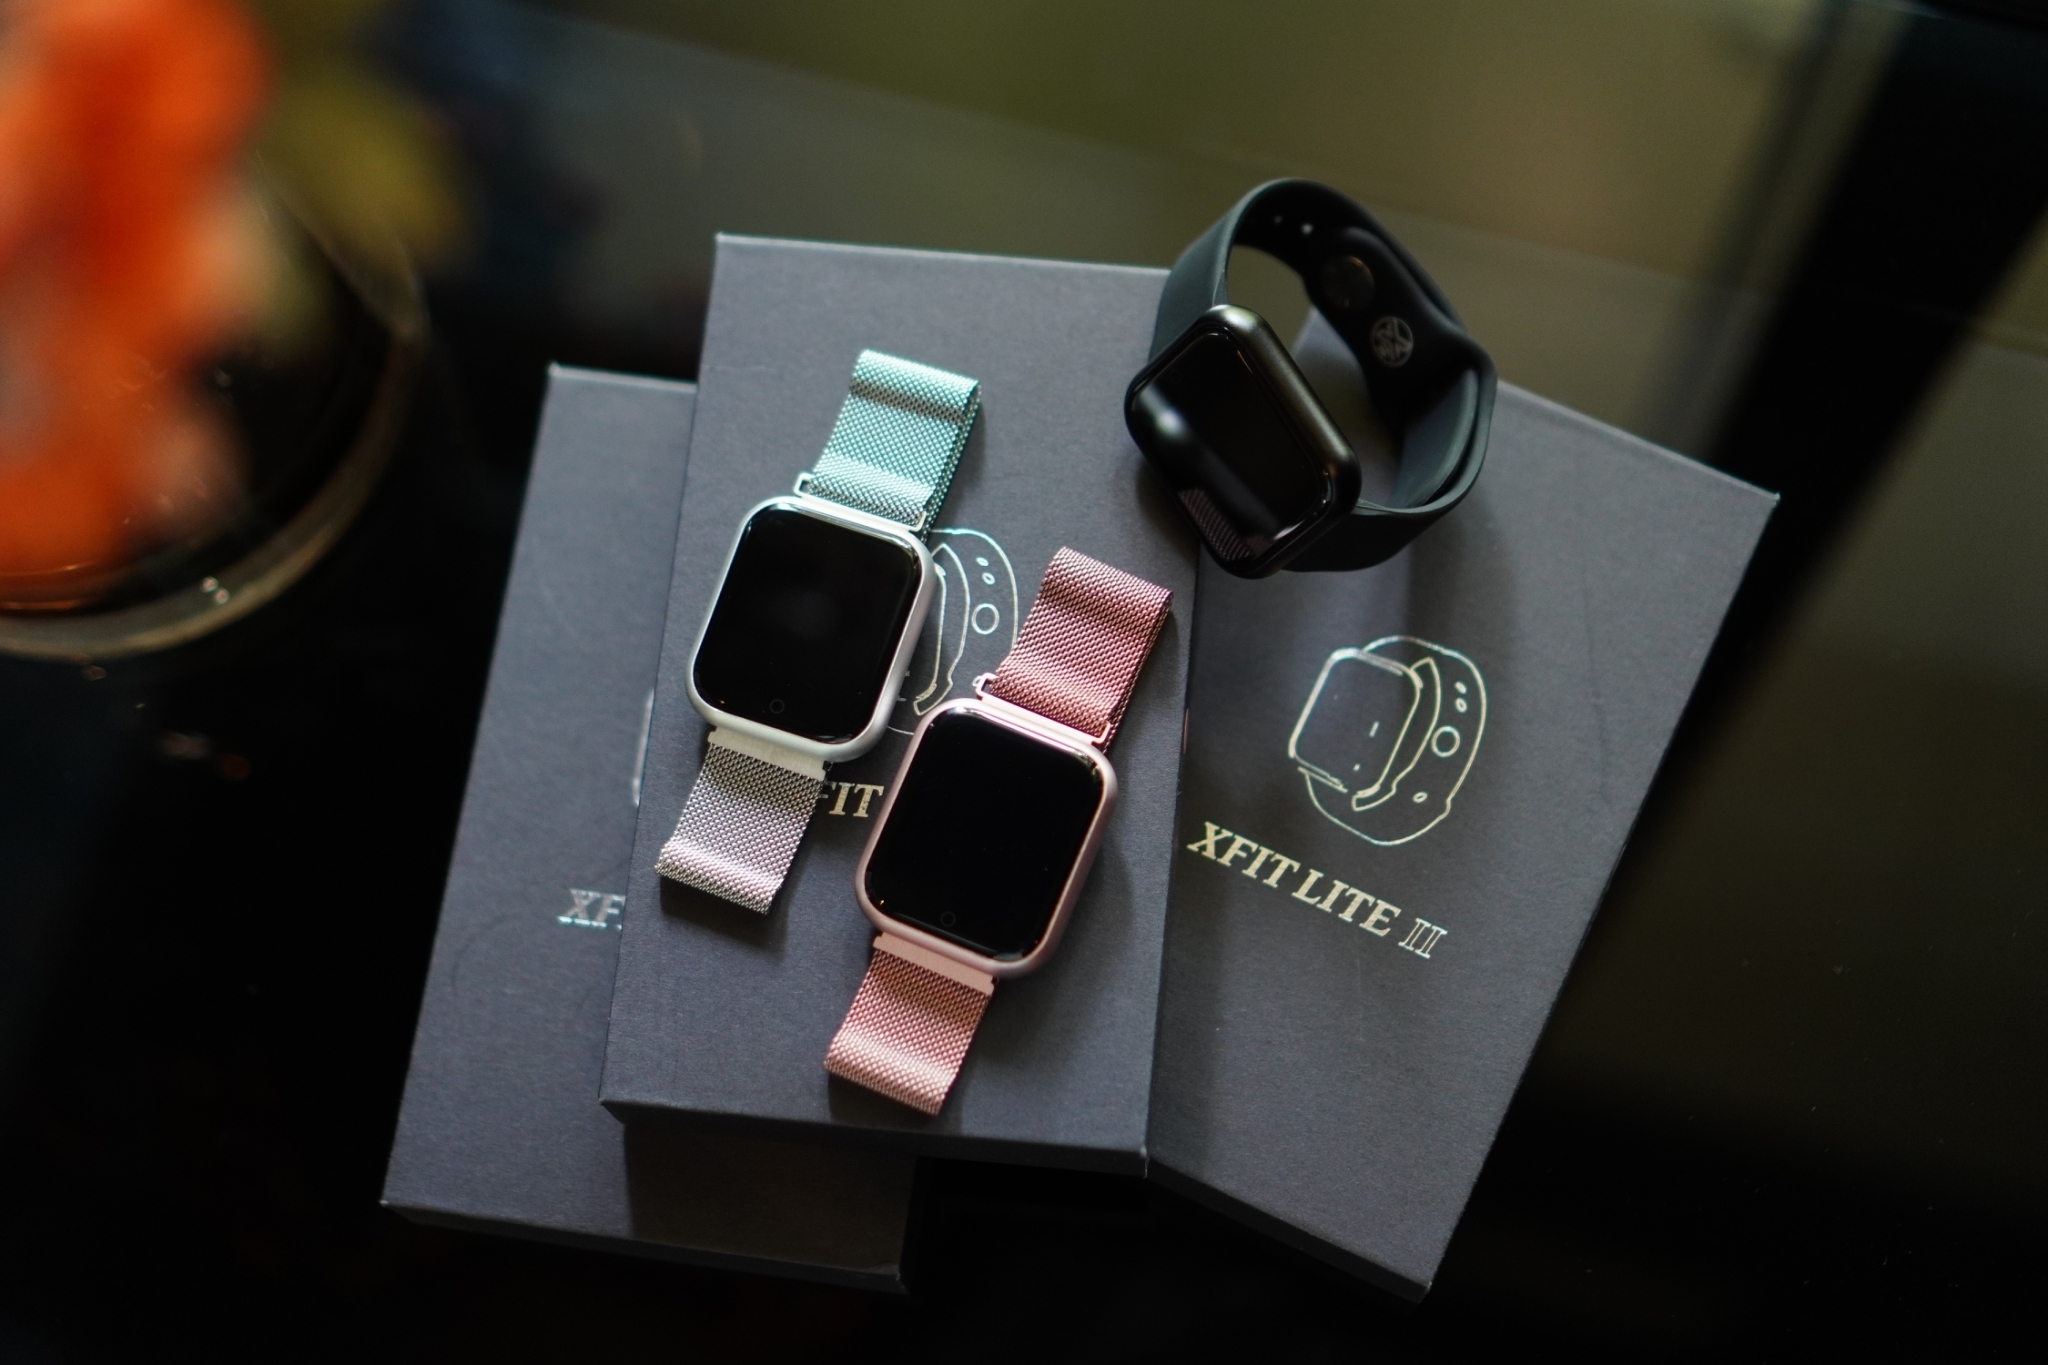 XFit รุ่น Lite II น้องใหม่ตระกูล XFIT Watch จุดสตาร์ทนาฬิกาอัจฉริยะ โดนใจสาวกอินแฟชั่นและรักสุขภาพตัวเองขนานแท้